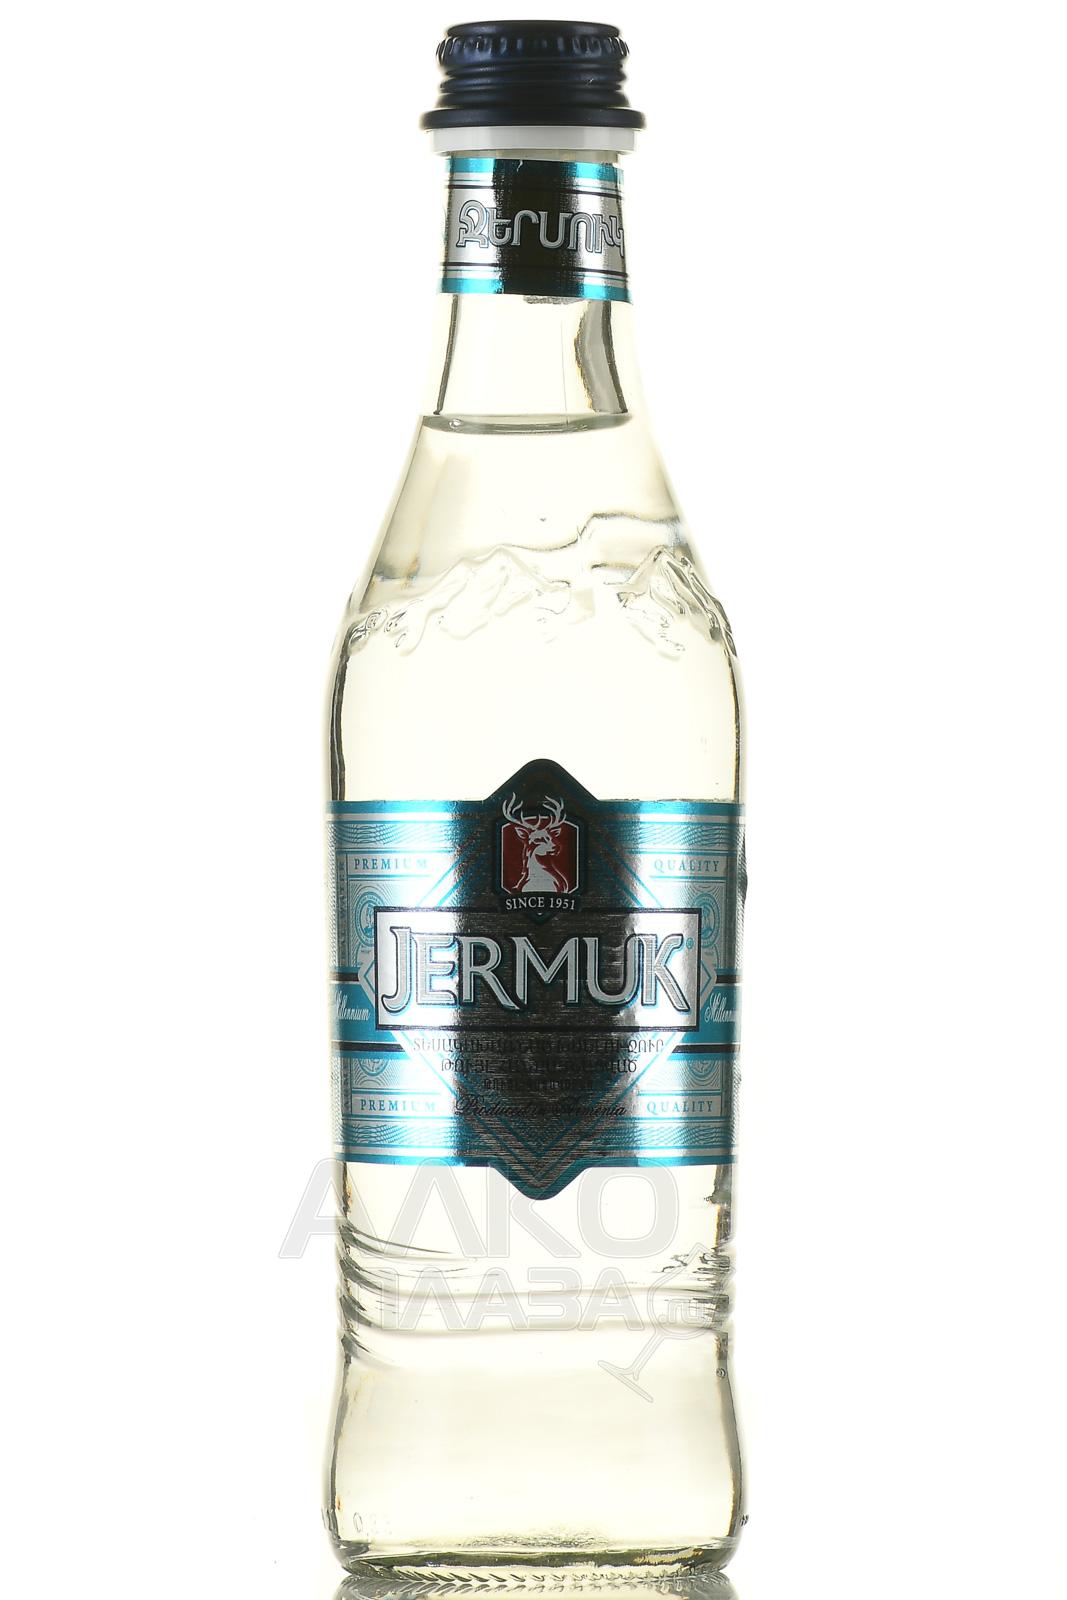 Jermuk - вода купаж. слабогазированная Джермук Миллениум 0.33 л стекло